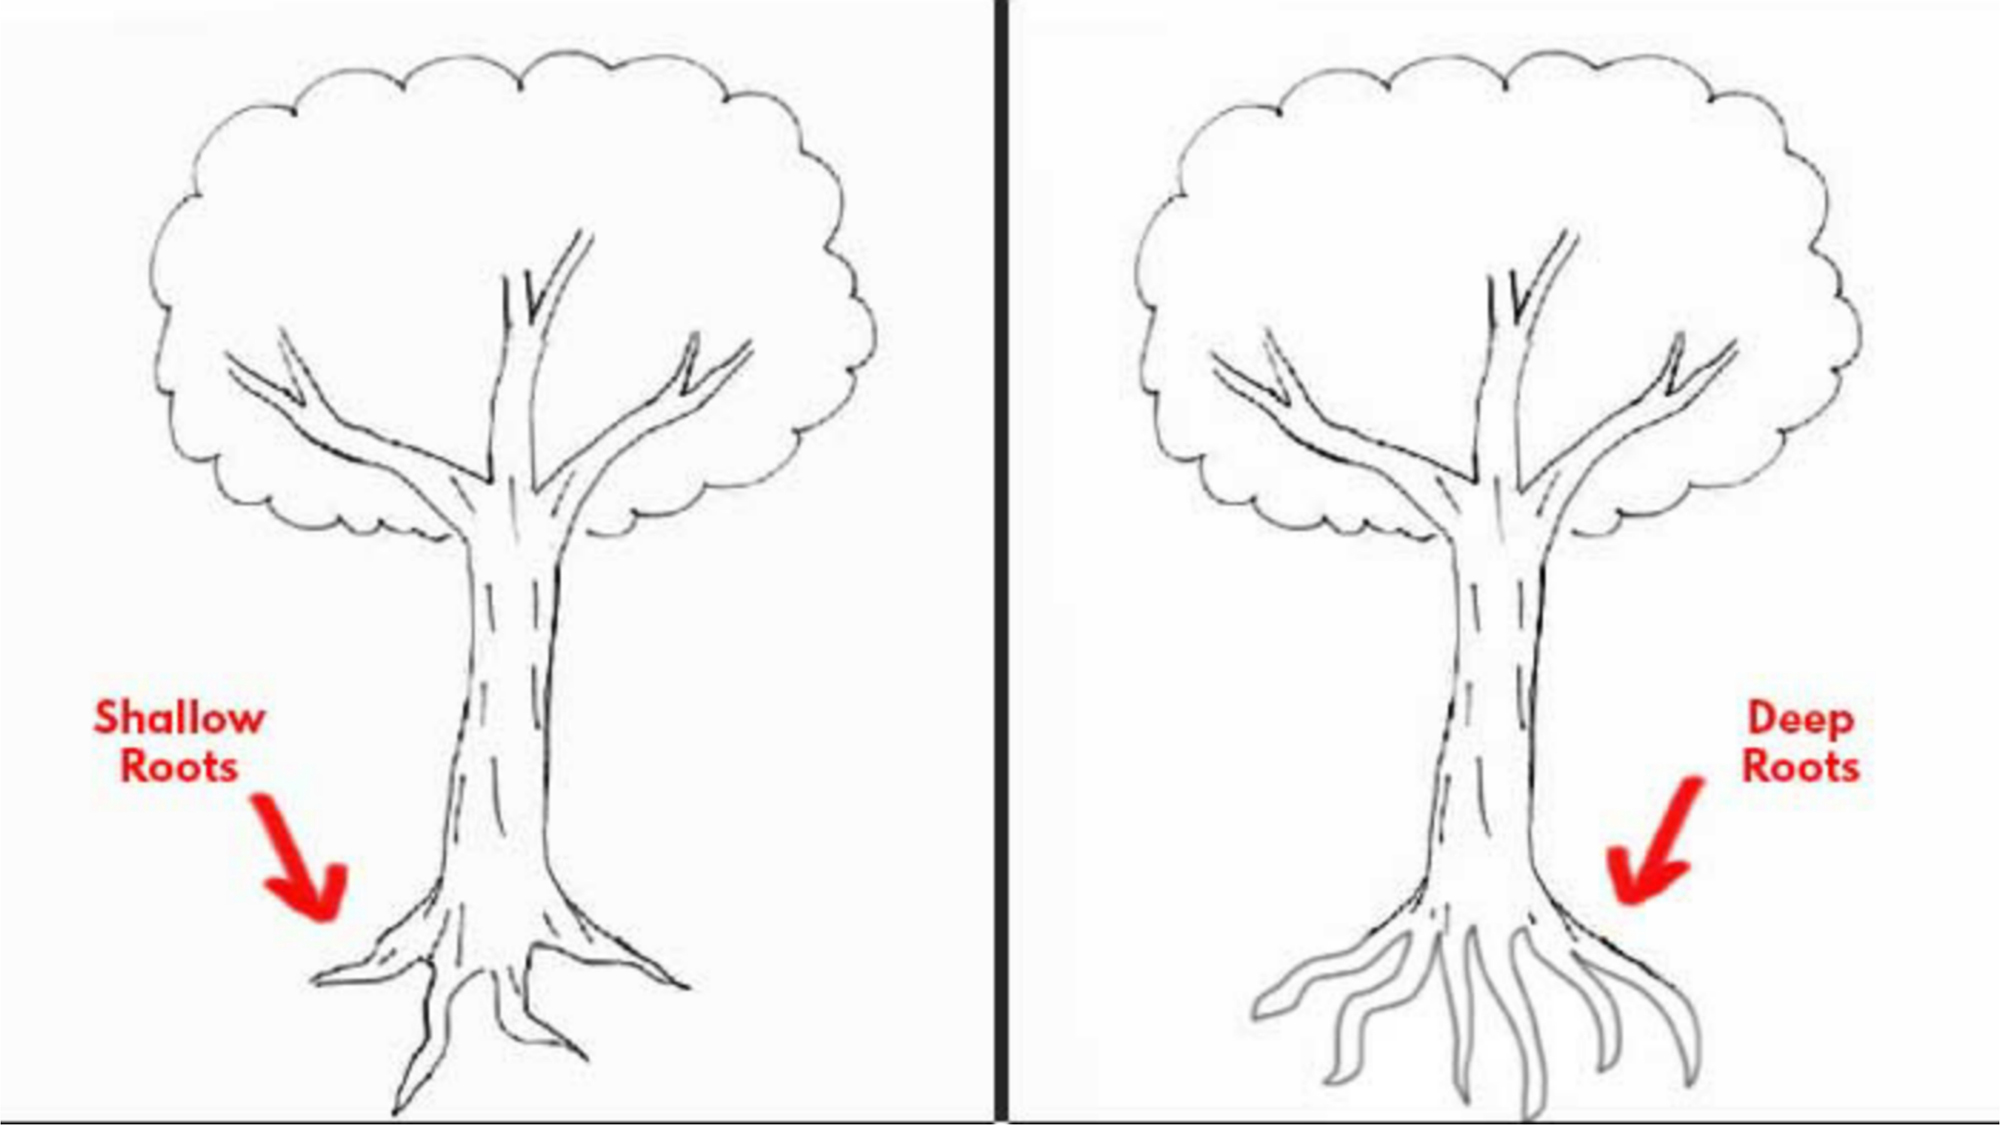 Hãy khám phá cách vẽ cây để thể hiện cảm xúc của bạn! Trong trắc nghiệm này, bạn sẽ học được những kỹ năng vẽ cây đơn giản nhưng đầy chất thơ, giúp bạn truyền tải được những tâm trạng của mình qua hình ảnh. Thật tuyệt vời khi có thể thể hiện bản thân một cách trực quan và đẹp mắt!